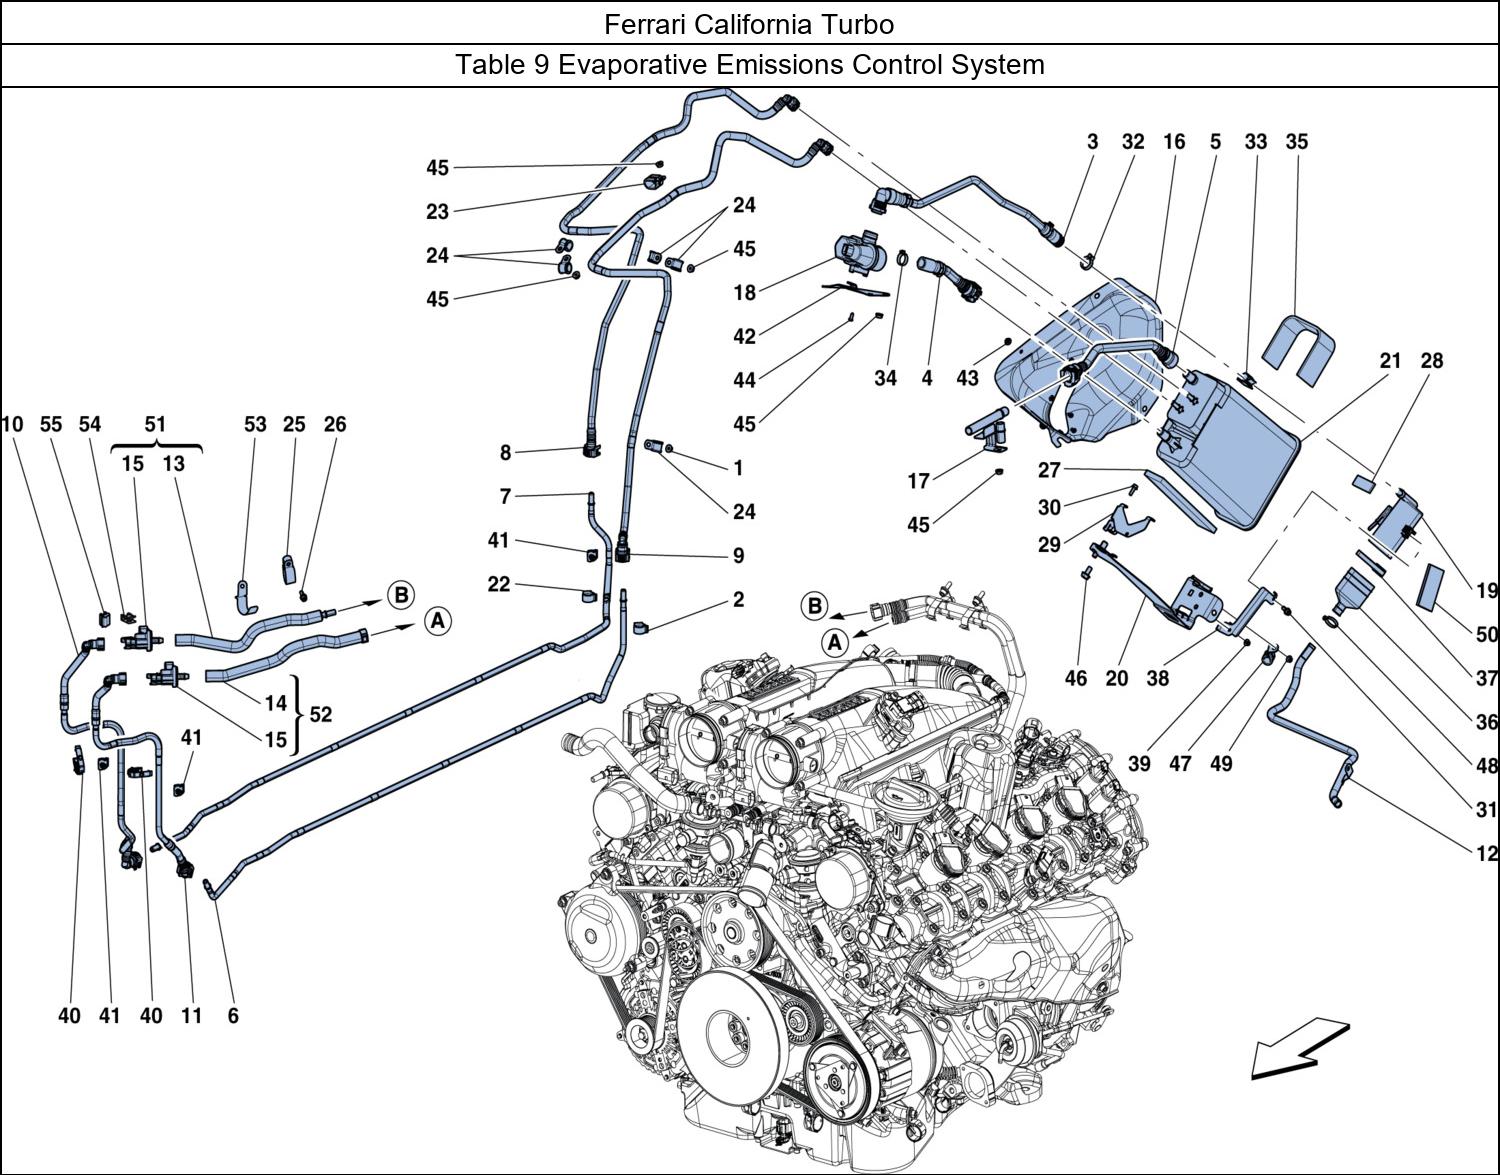 Ferrari Parts Ferrari California Turbo Table 9 Evaporative Emissions Control System